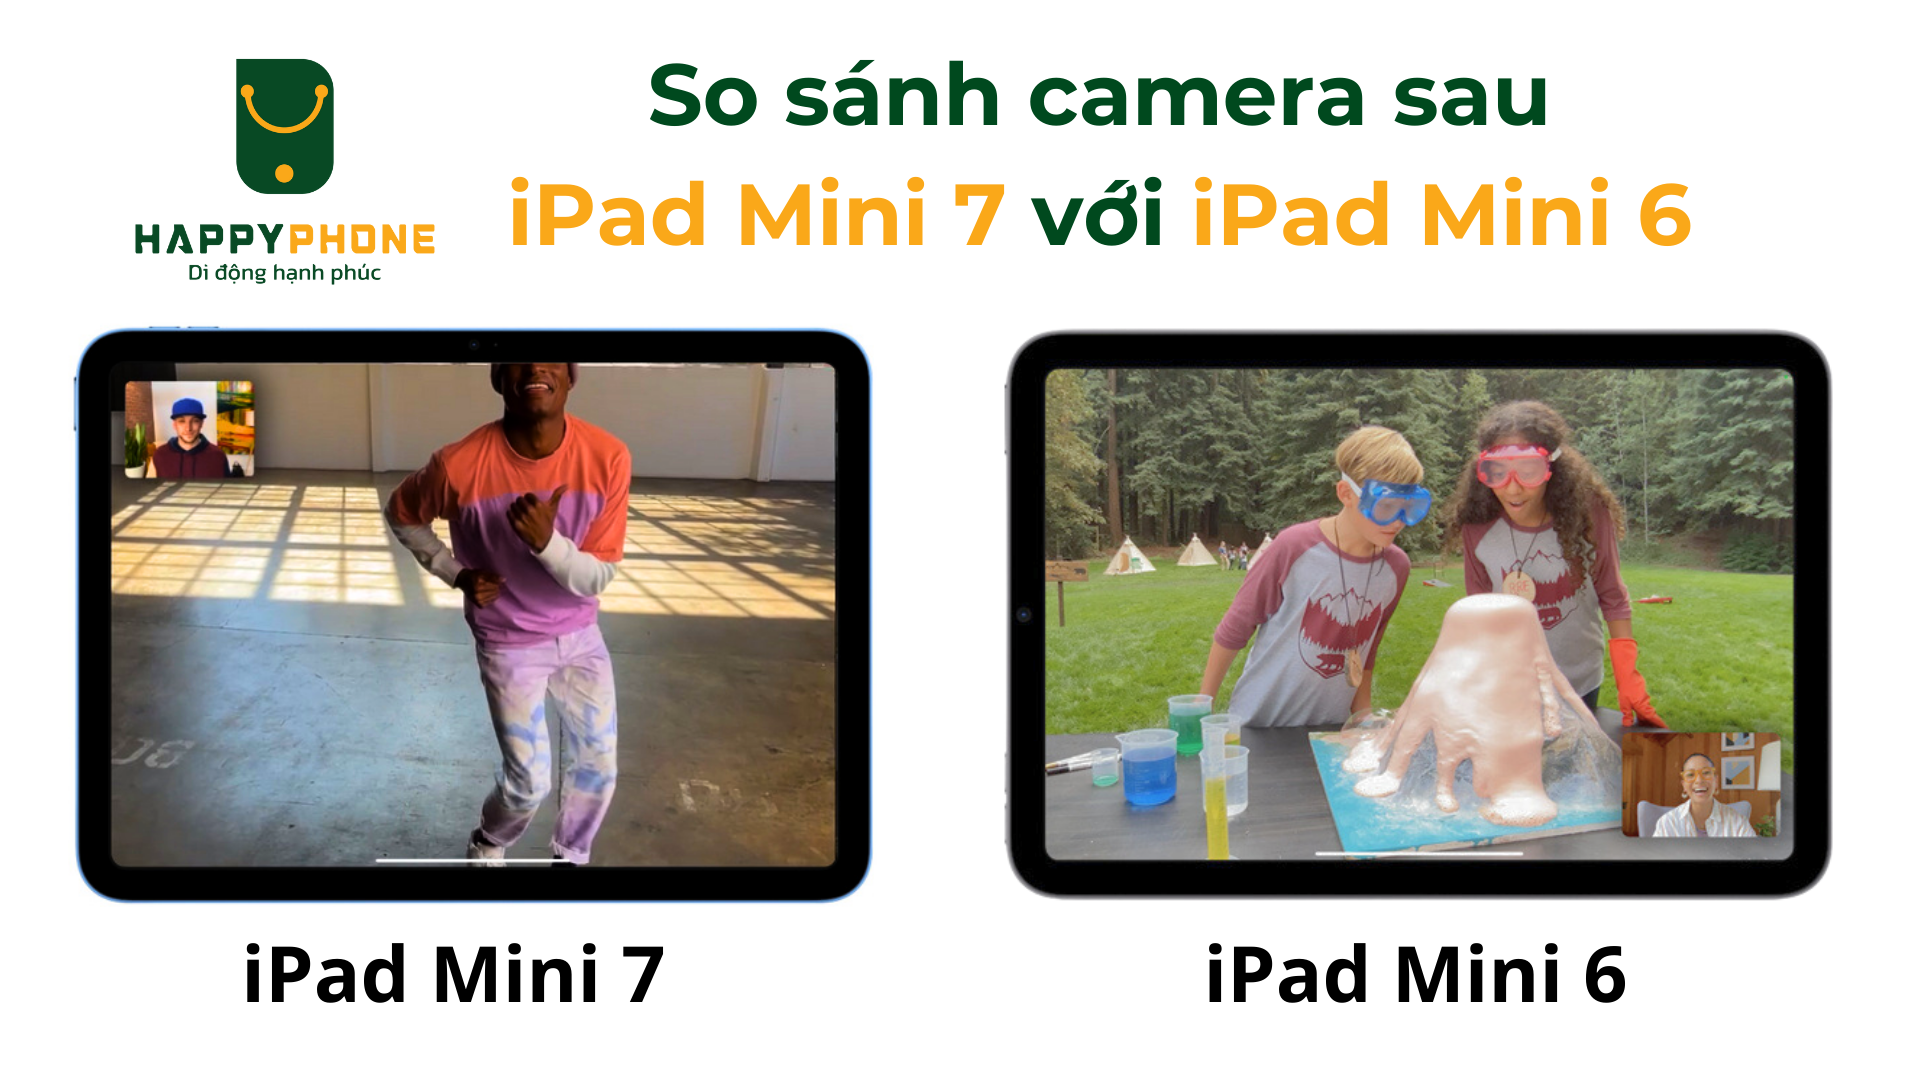 So sánh camera sau của iPad Mini 7 và iPad Mini 6